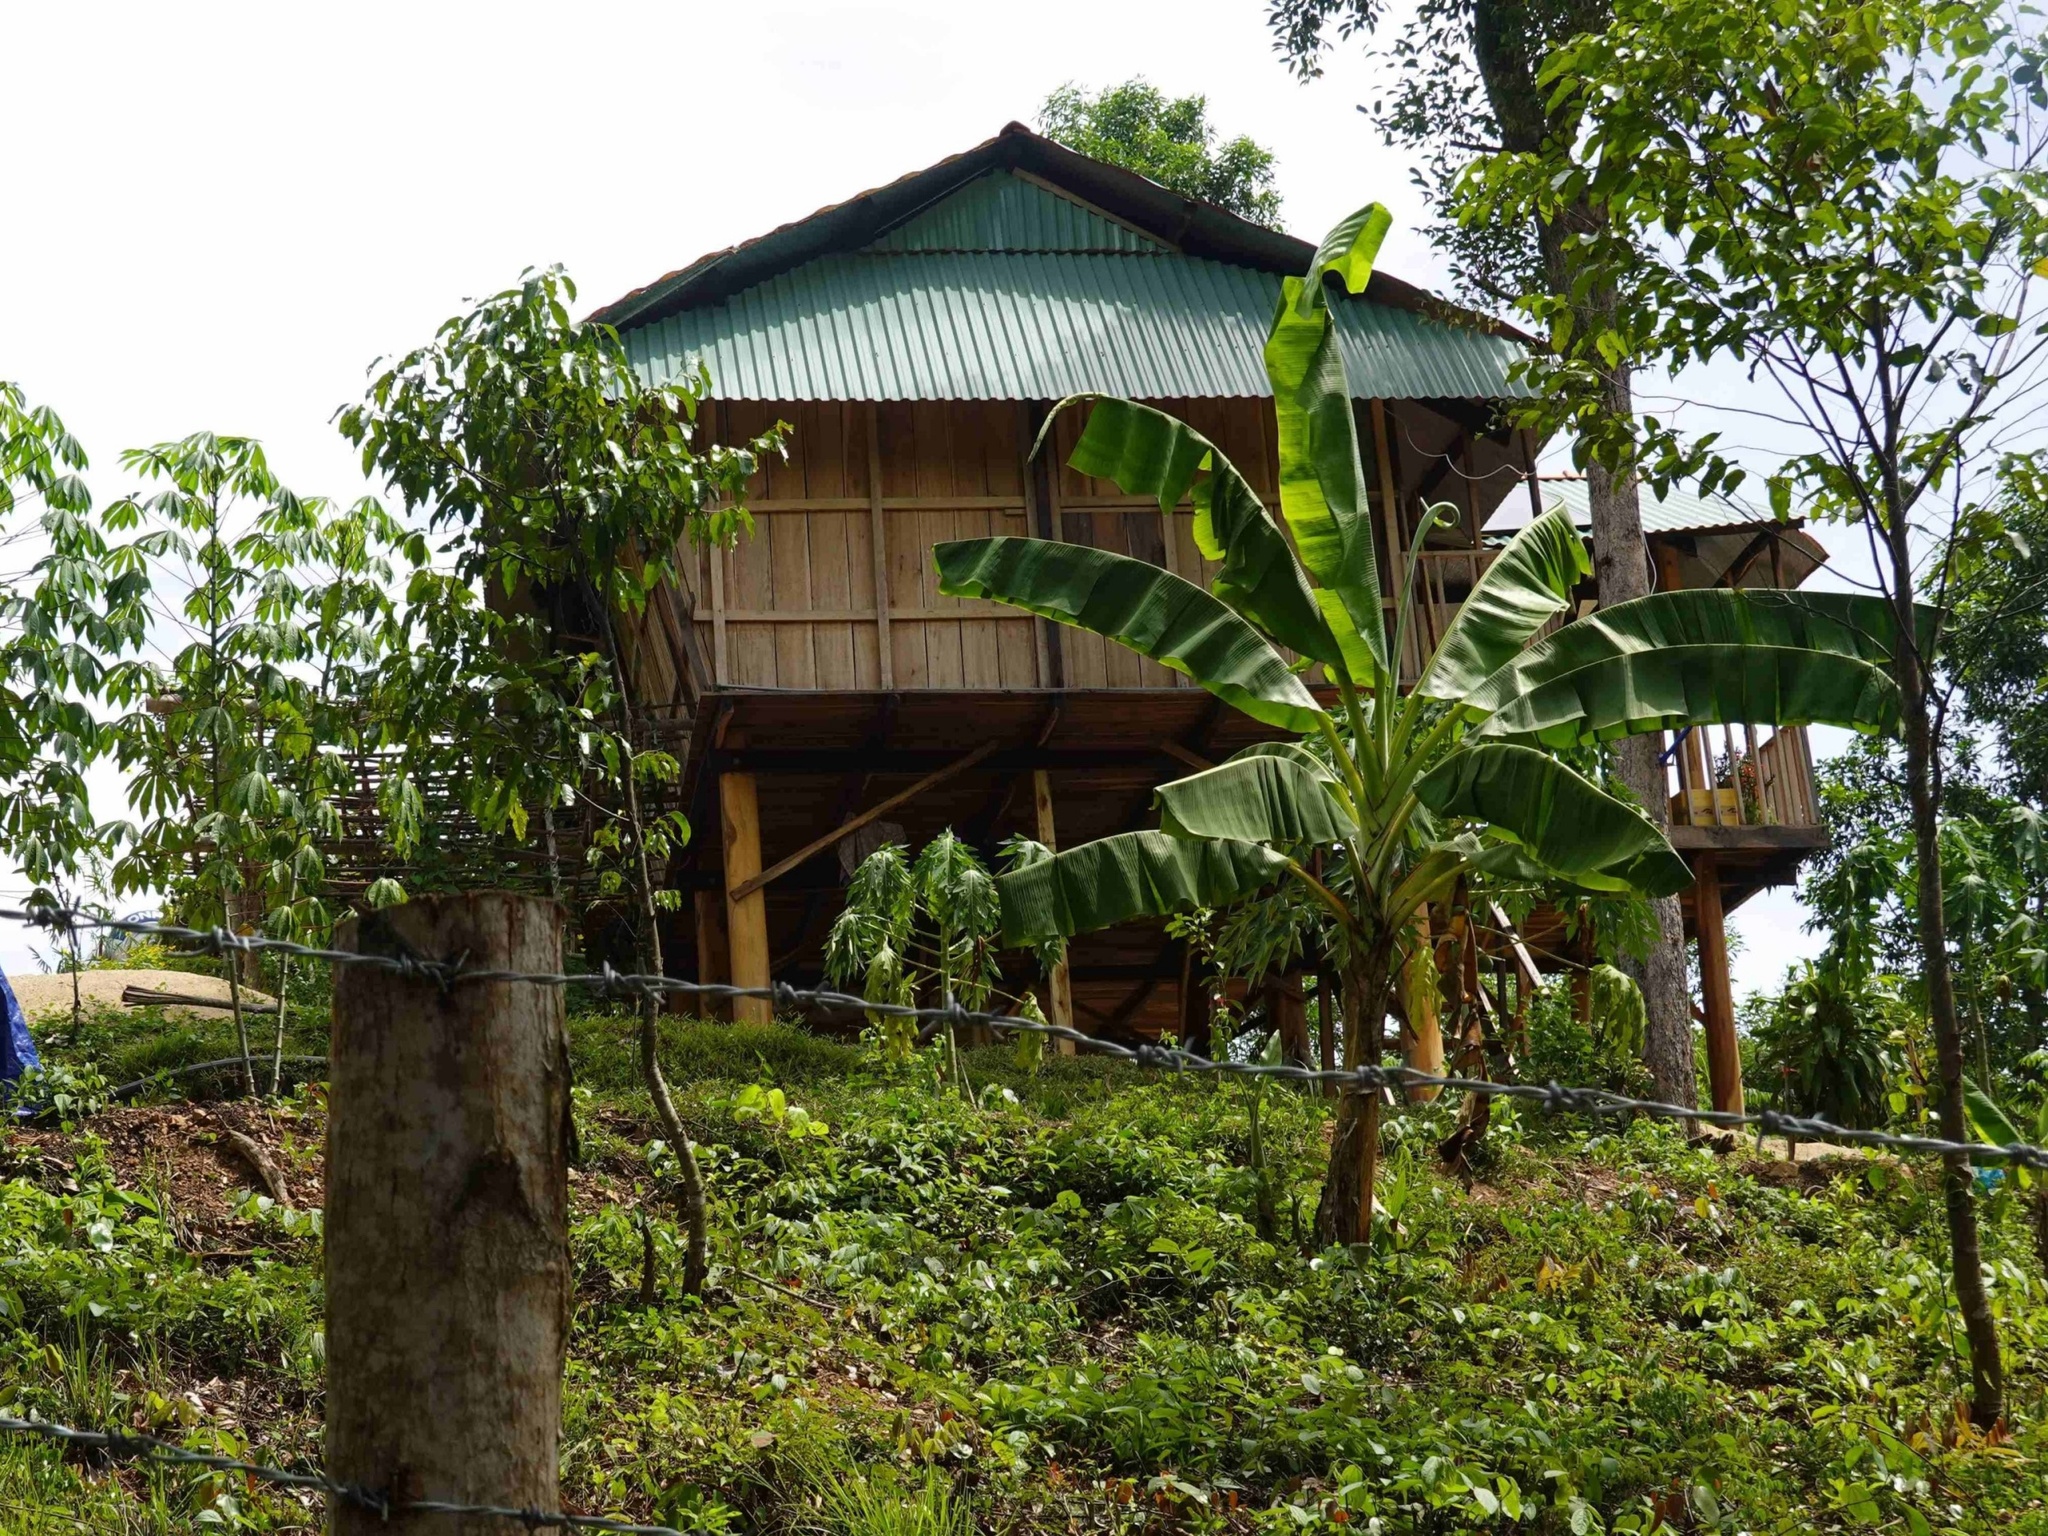 hu đất rừng phòng hộ bị chiếm để dựng nhà sàn của bà Trương Thị Lệ Thâm ở xã Vĩnh Hảo, huyện Vĩnh Thạnh